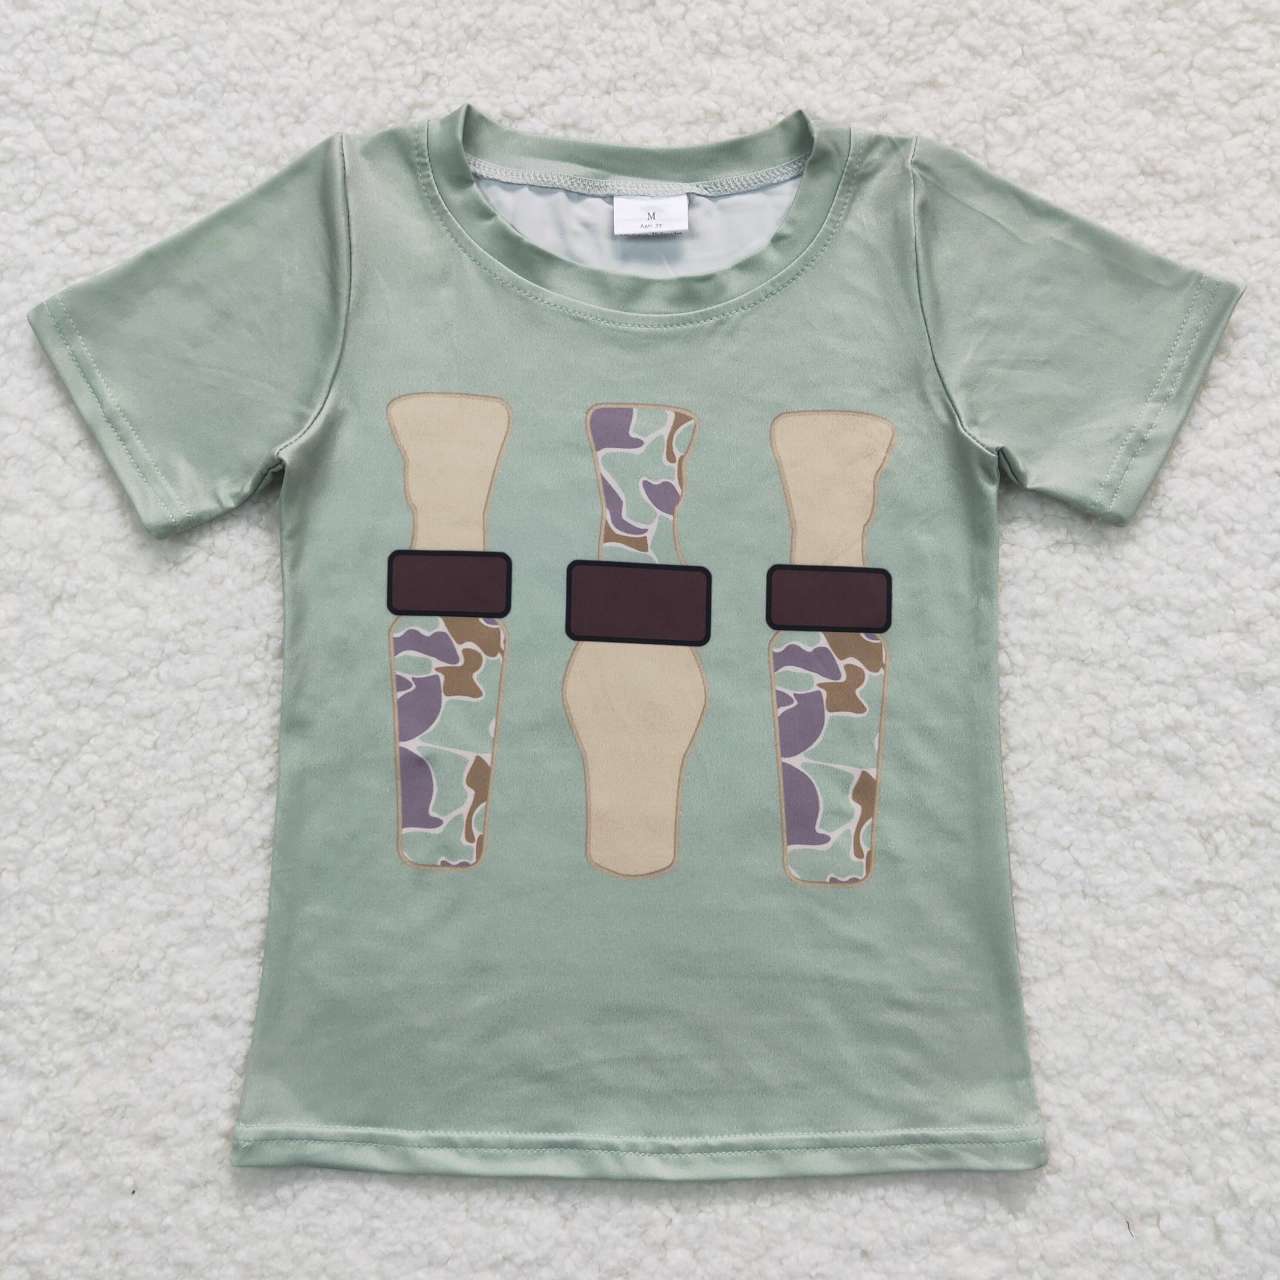 BT0374 RTS baby boy clothes farm boy summer tshirt